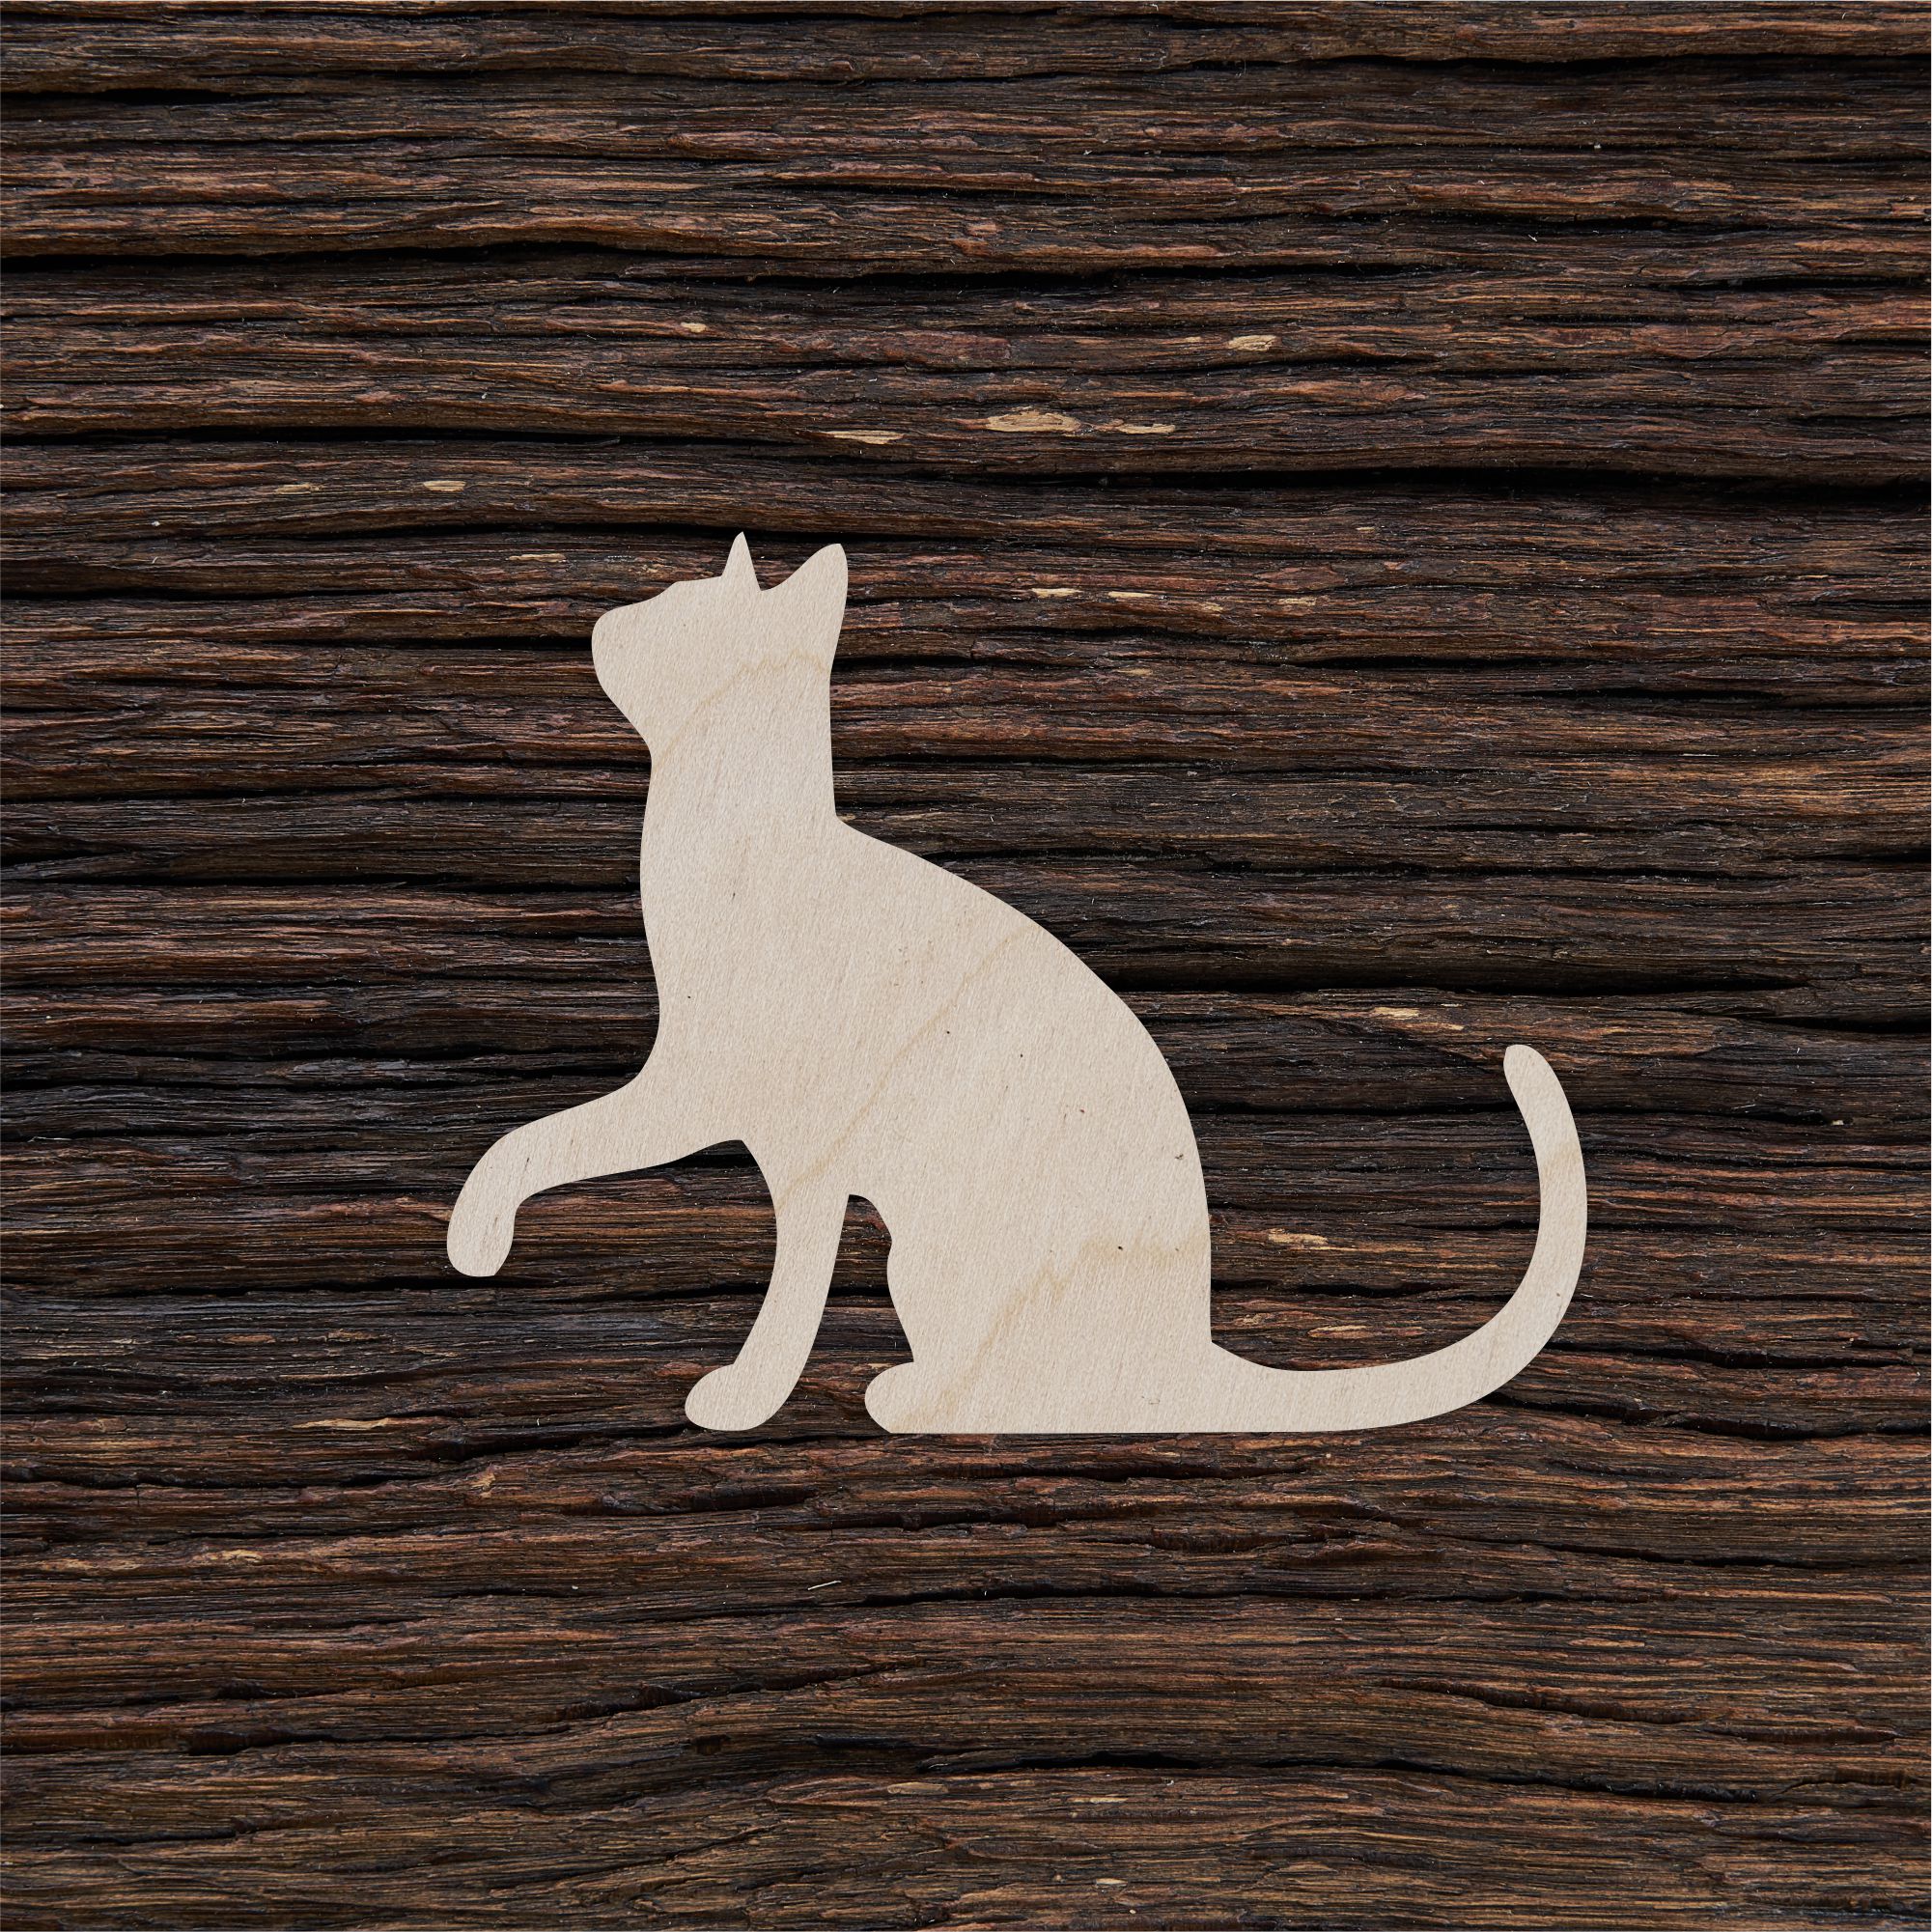 Sėdinti katė - medinis gaminys, pjautas lazeriu - dekoravimui ir dažymui 